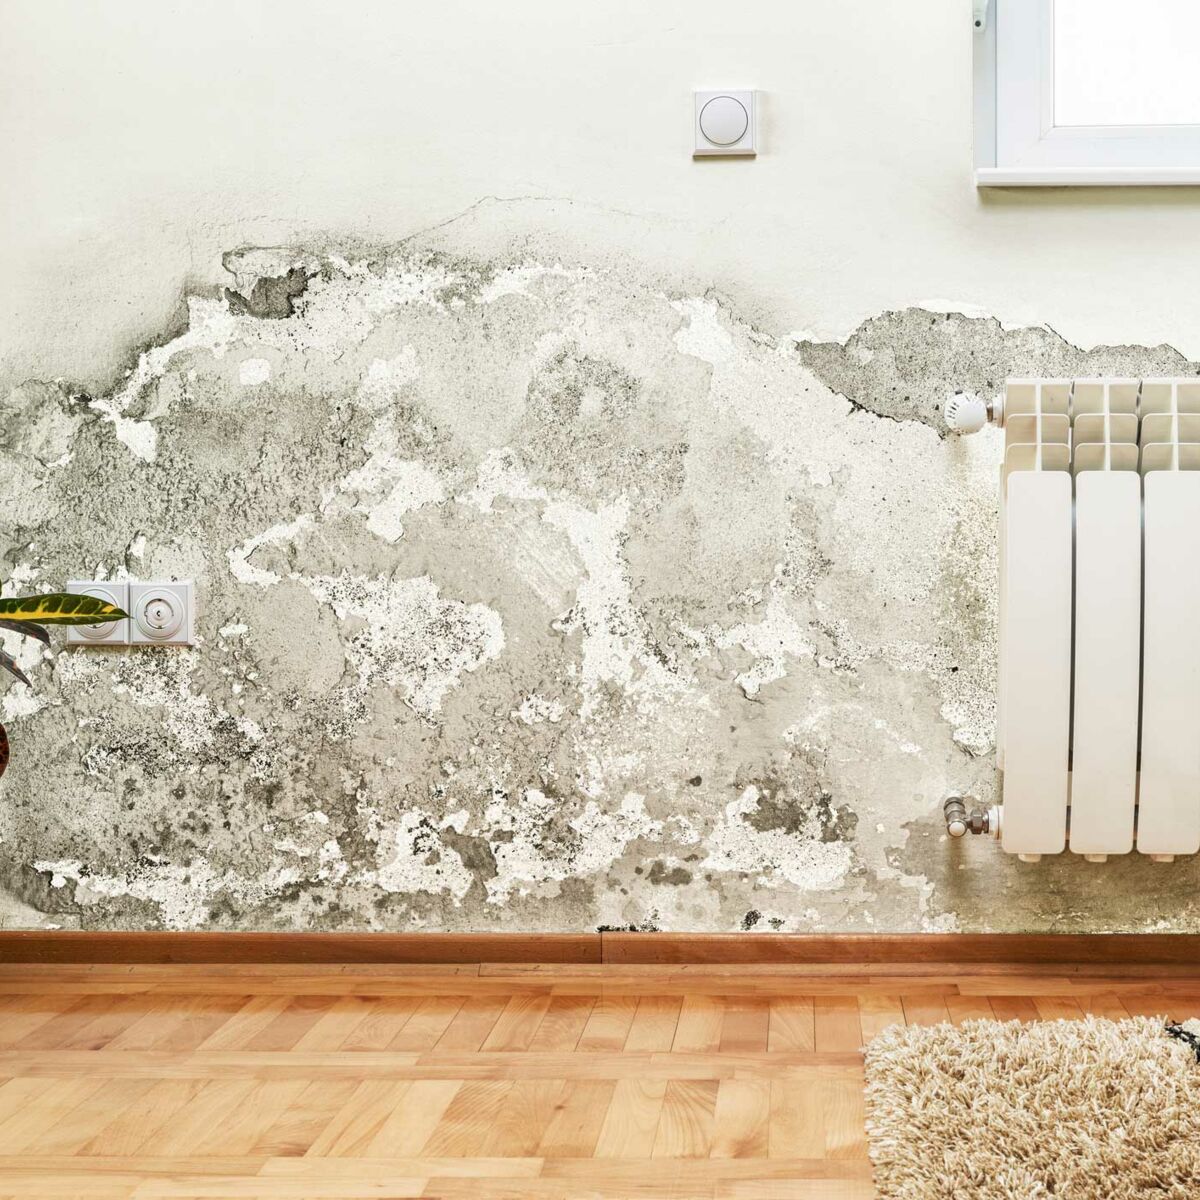 Comment supprimer et nettoyer les moisissures sur un mur ? Les